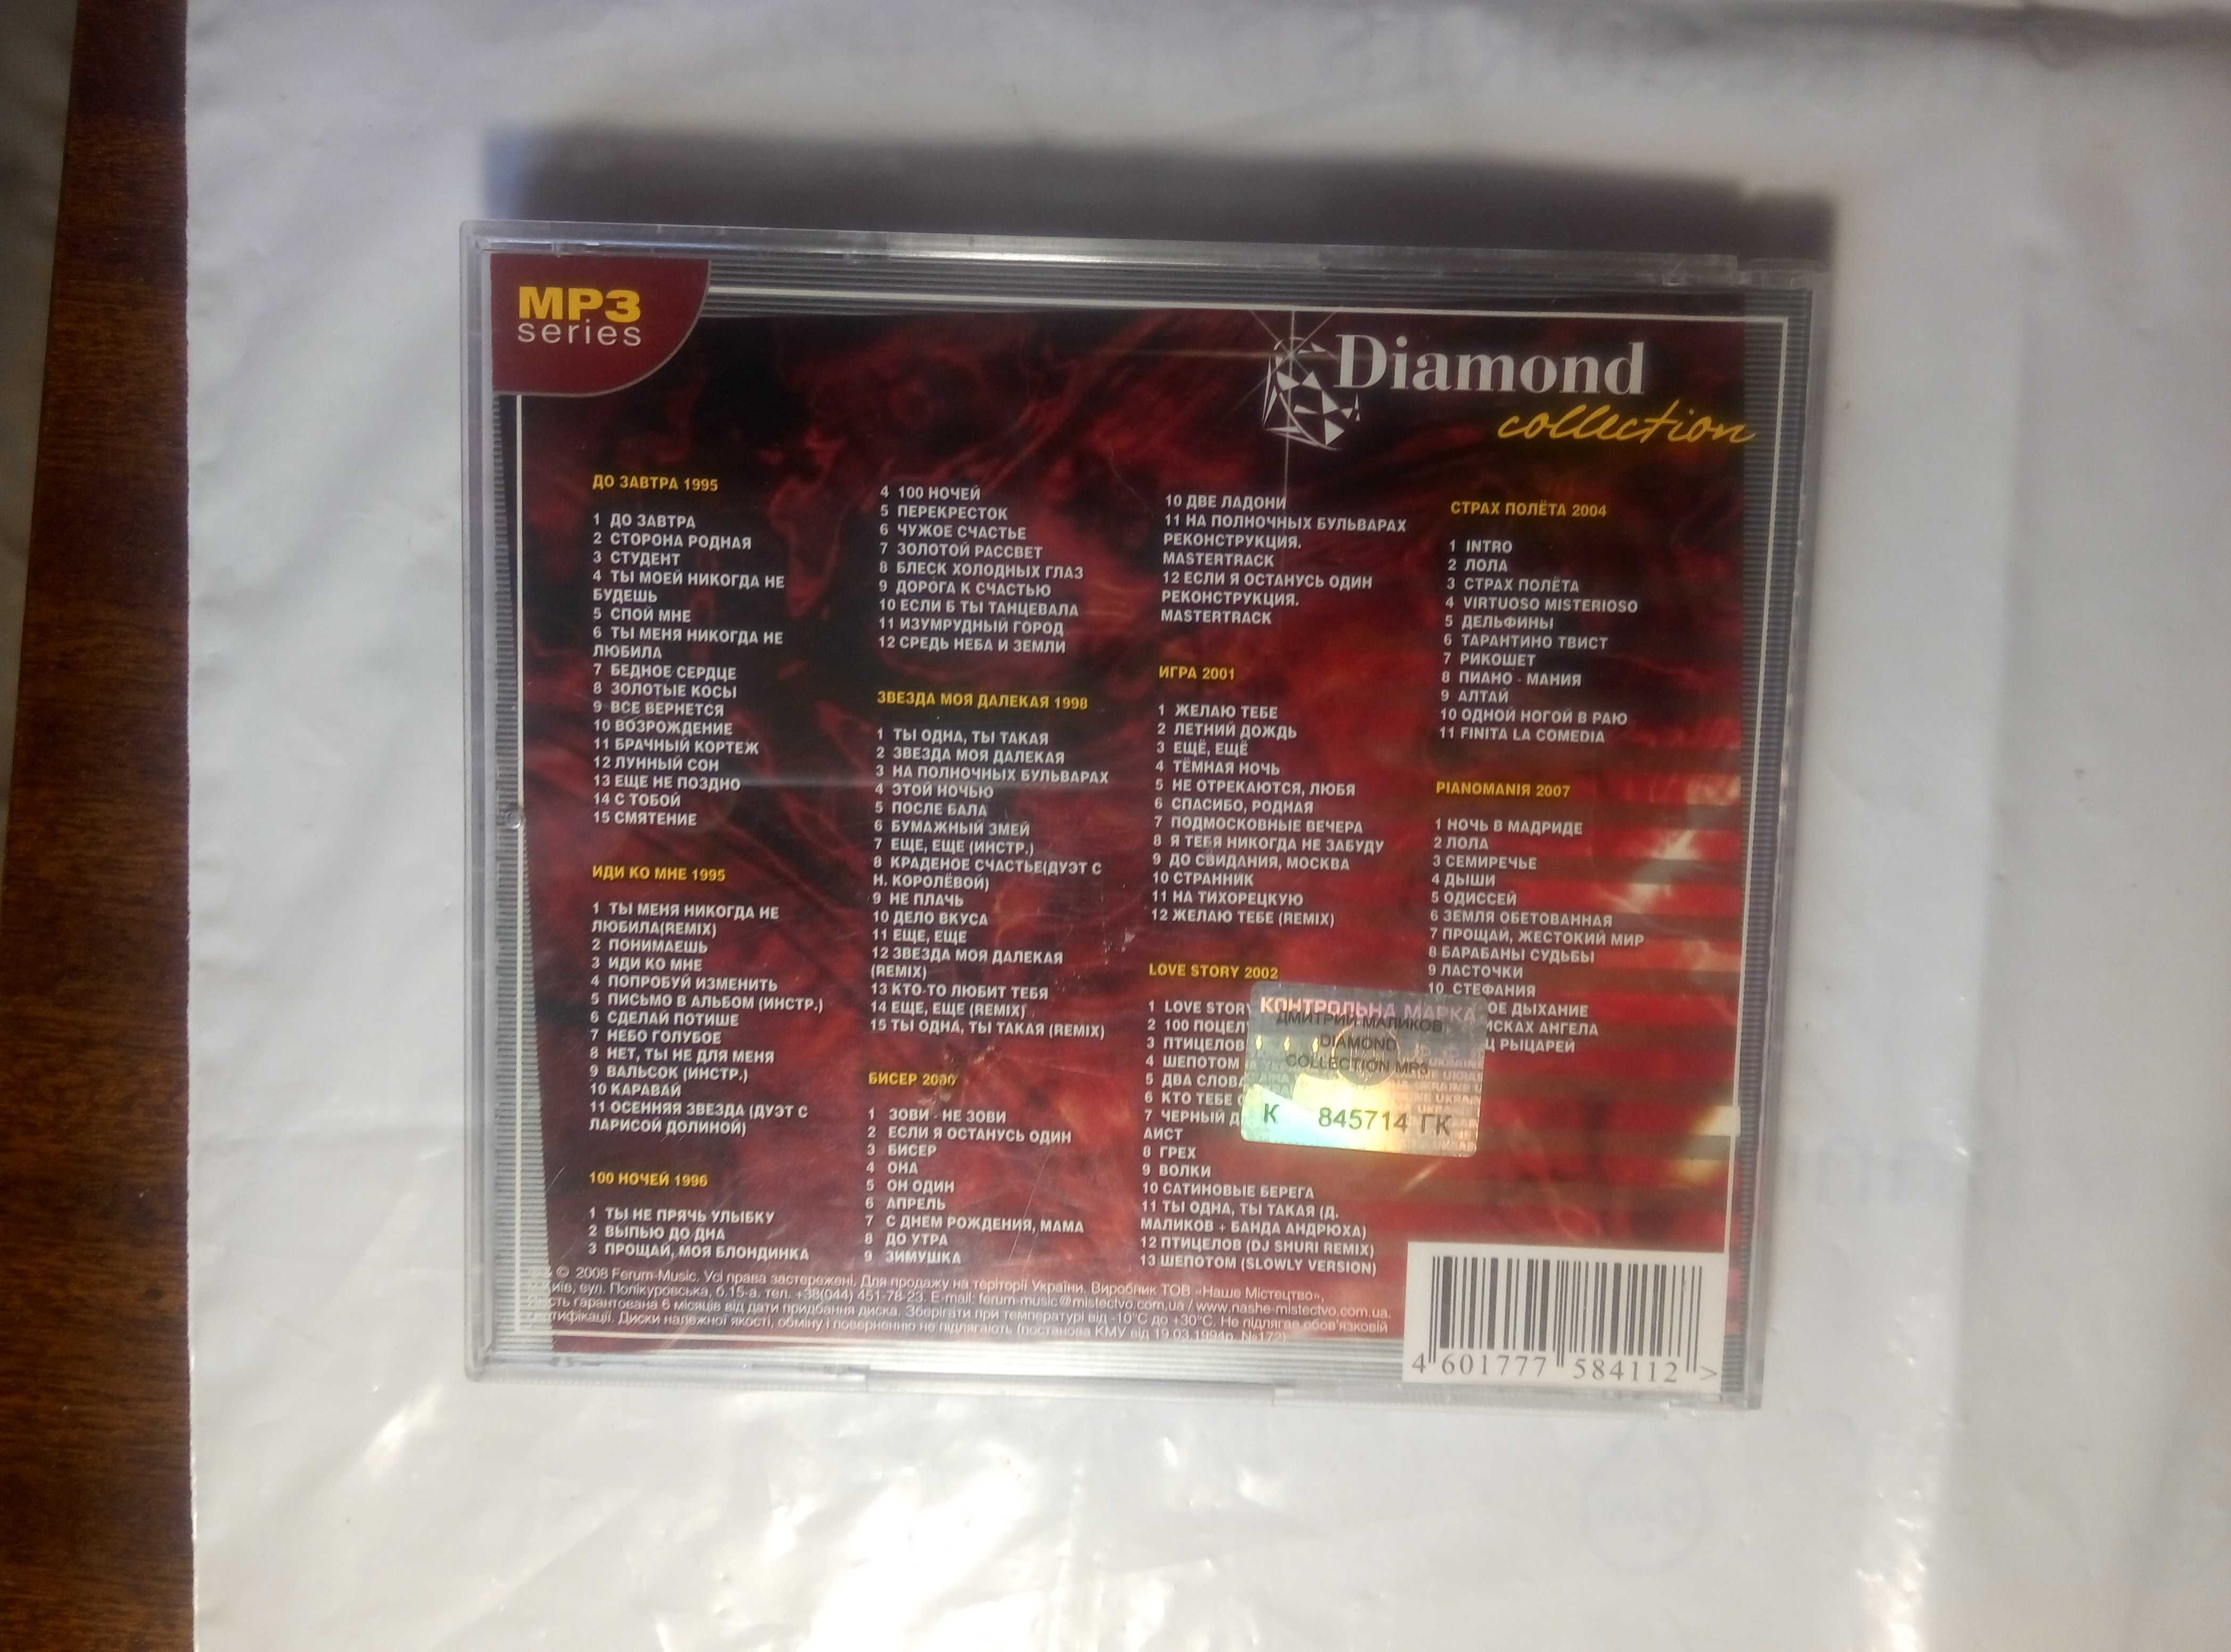 Дмитрий Маликов Diamond collection MP-3 диск как новый .